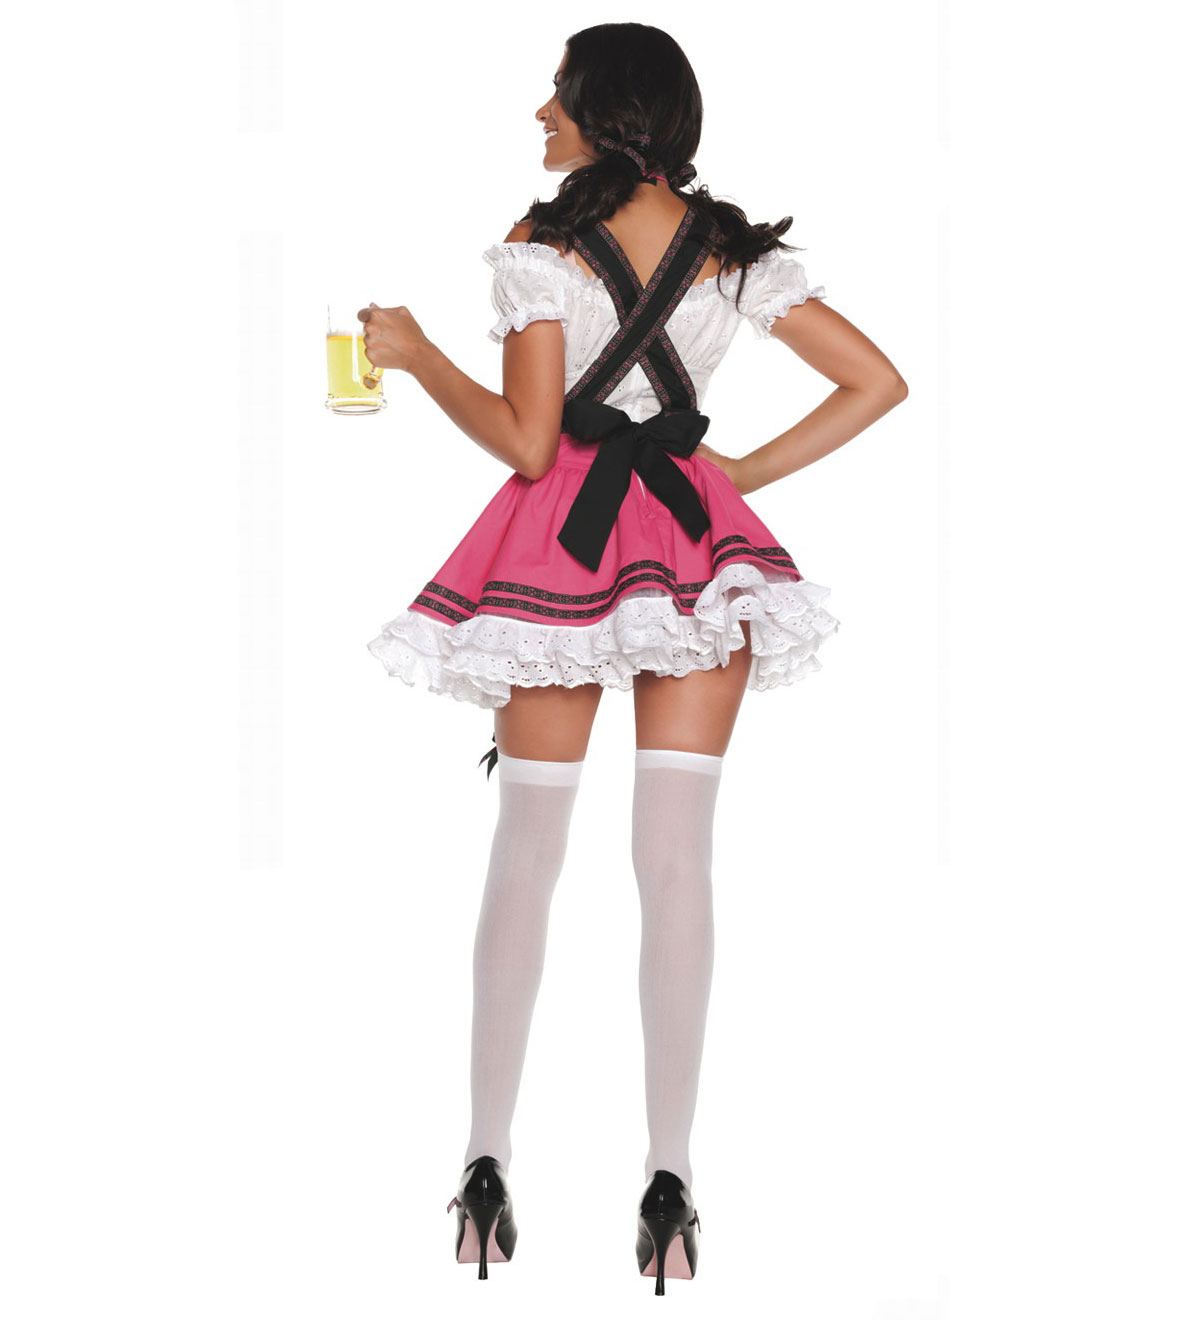 Milk maid costume ideas